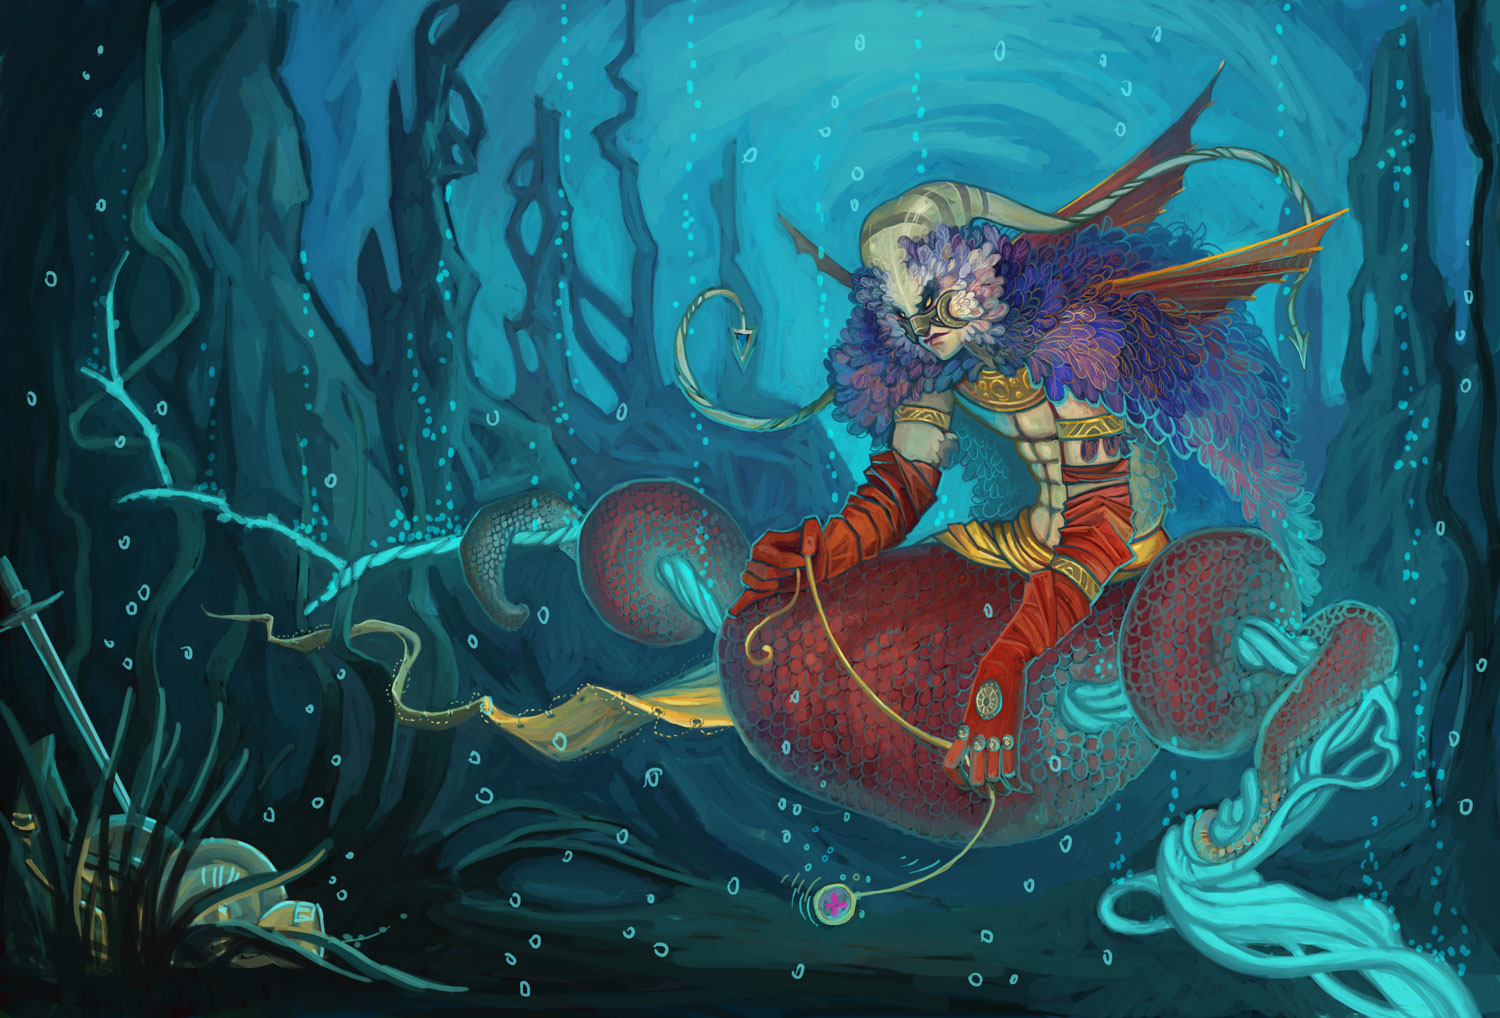 Fantasy-themed artistic desktop wallpaper